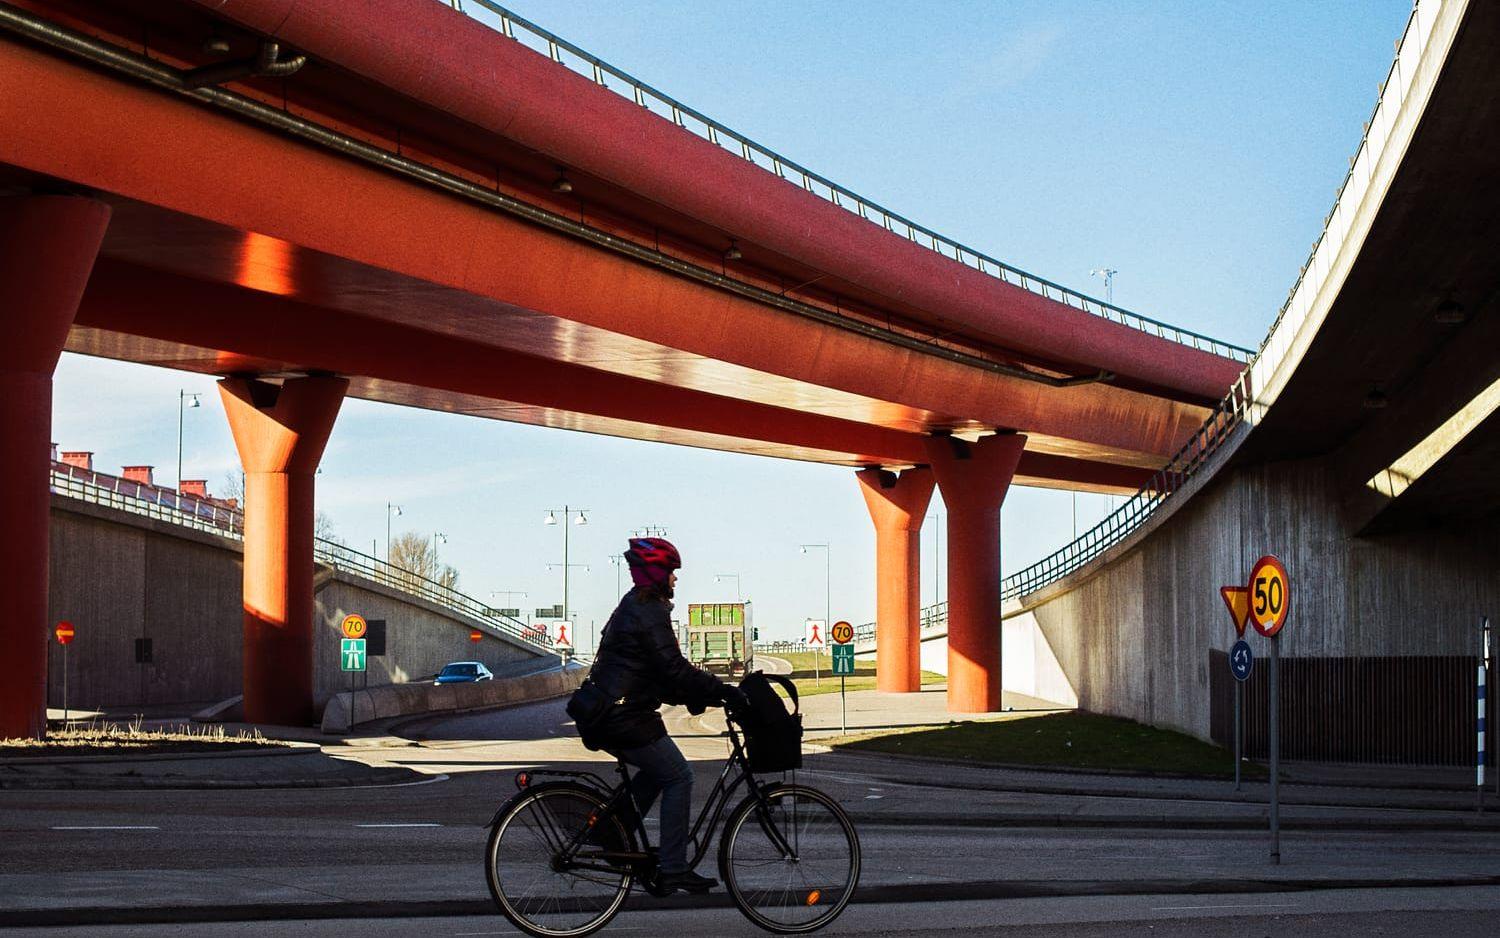 Varför inte redan nu bygga om hela Partihallslänken – Röde orm – till cykelbana? Det skulle göra även cyklisterna i Köpenhamn avundsjuka, skriver Ola Nylander. Foto: Oliver Lindkvist